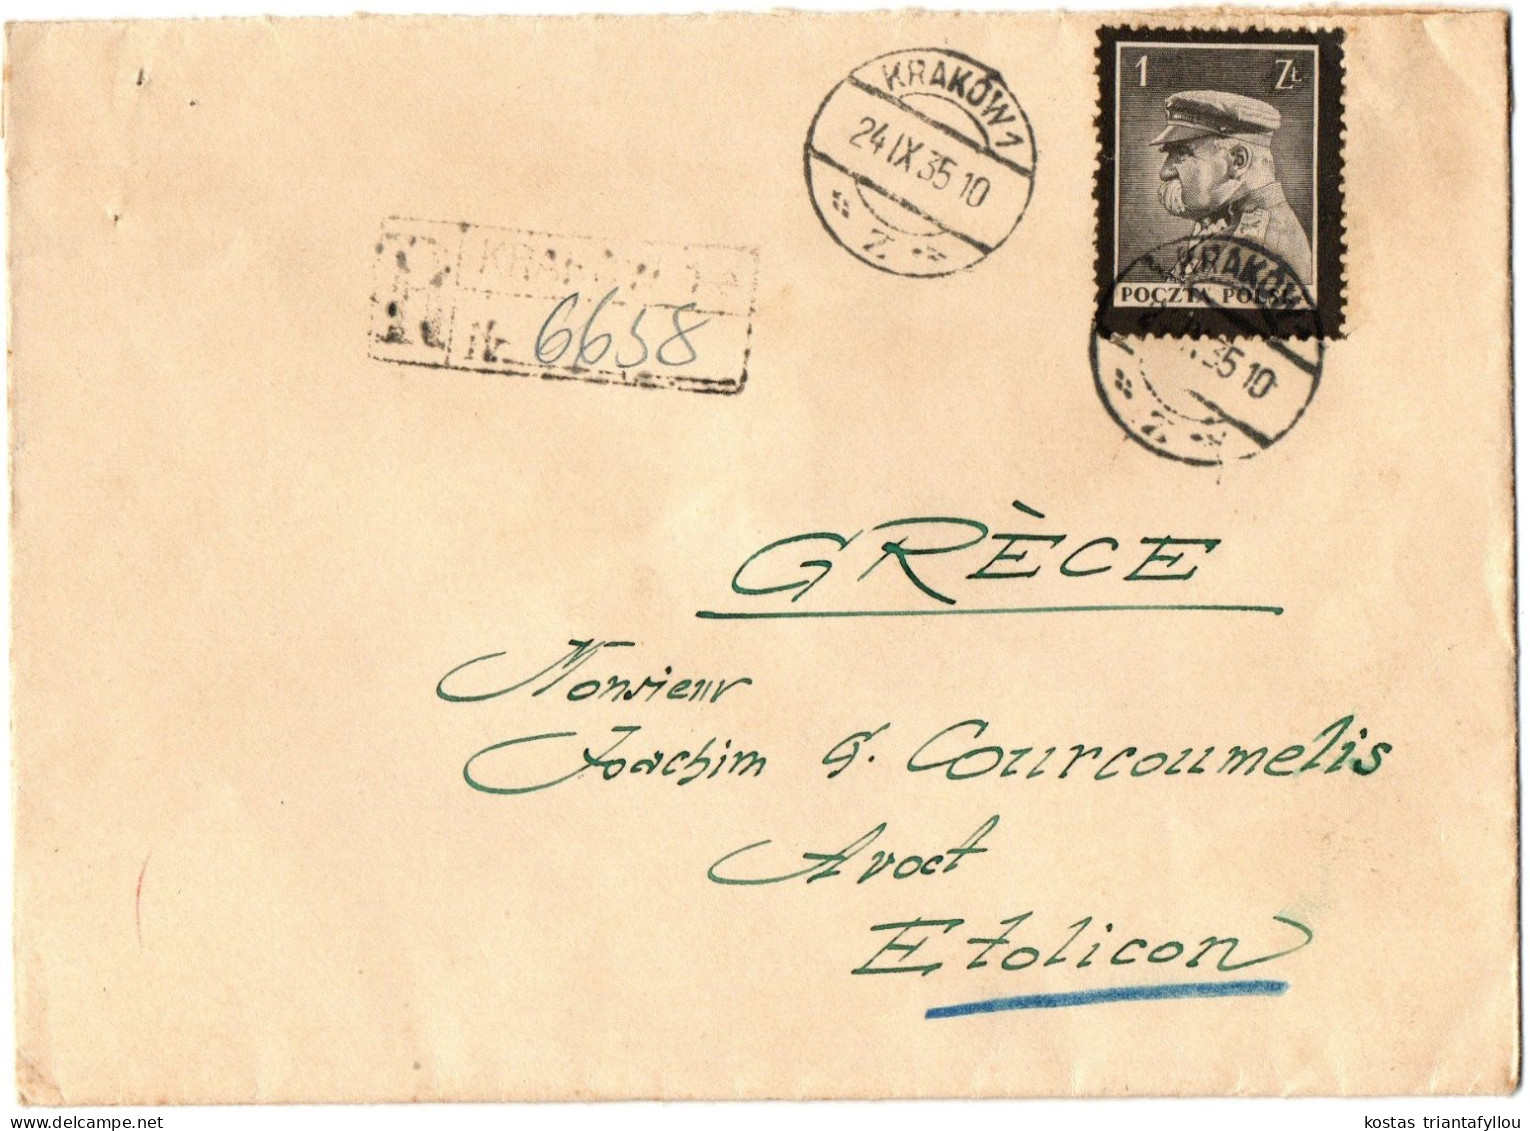 1, 4 POLAND, 1935, COVER TO GREECE - Cartas & Documentos